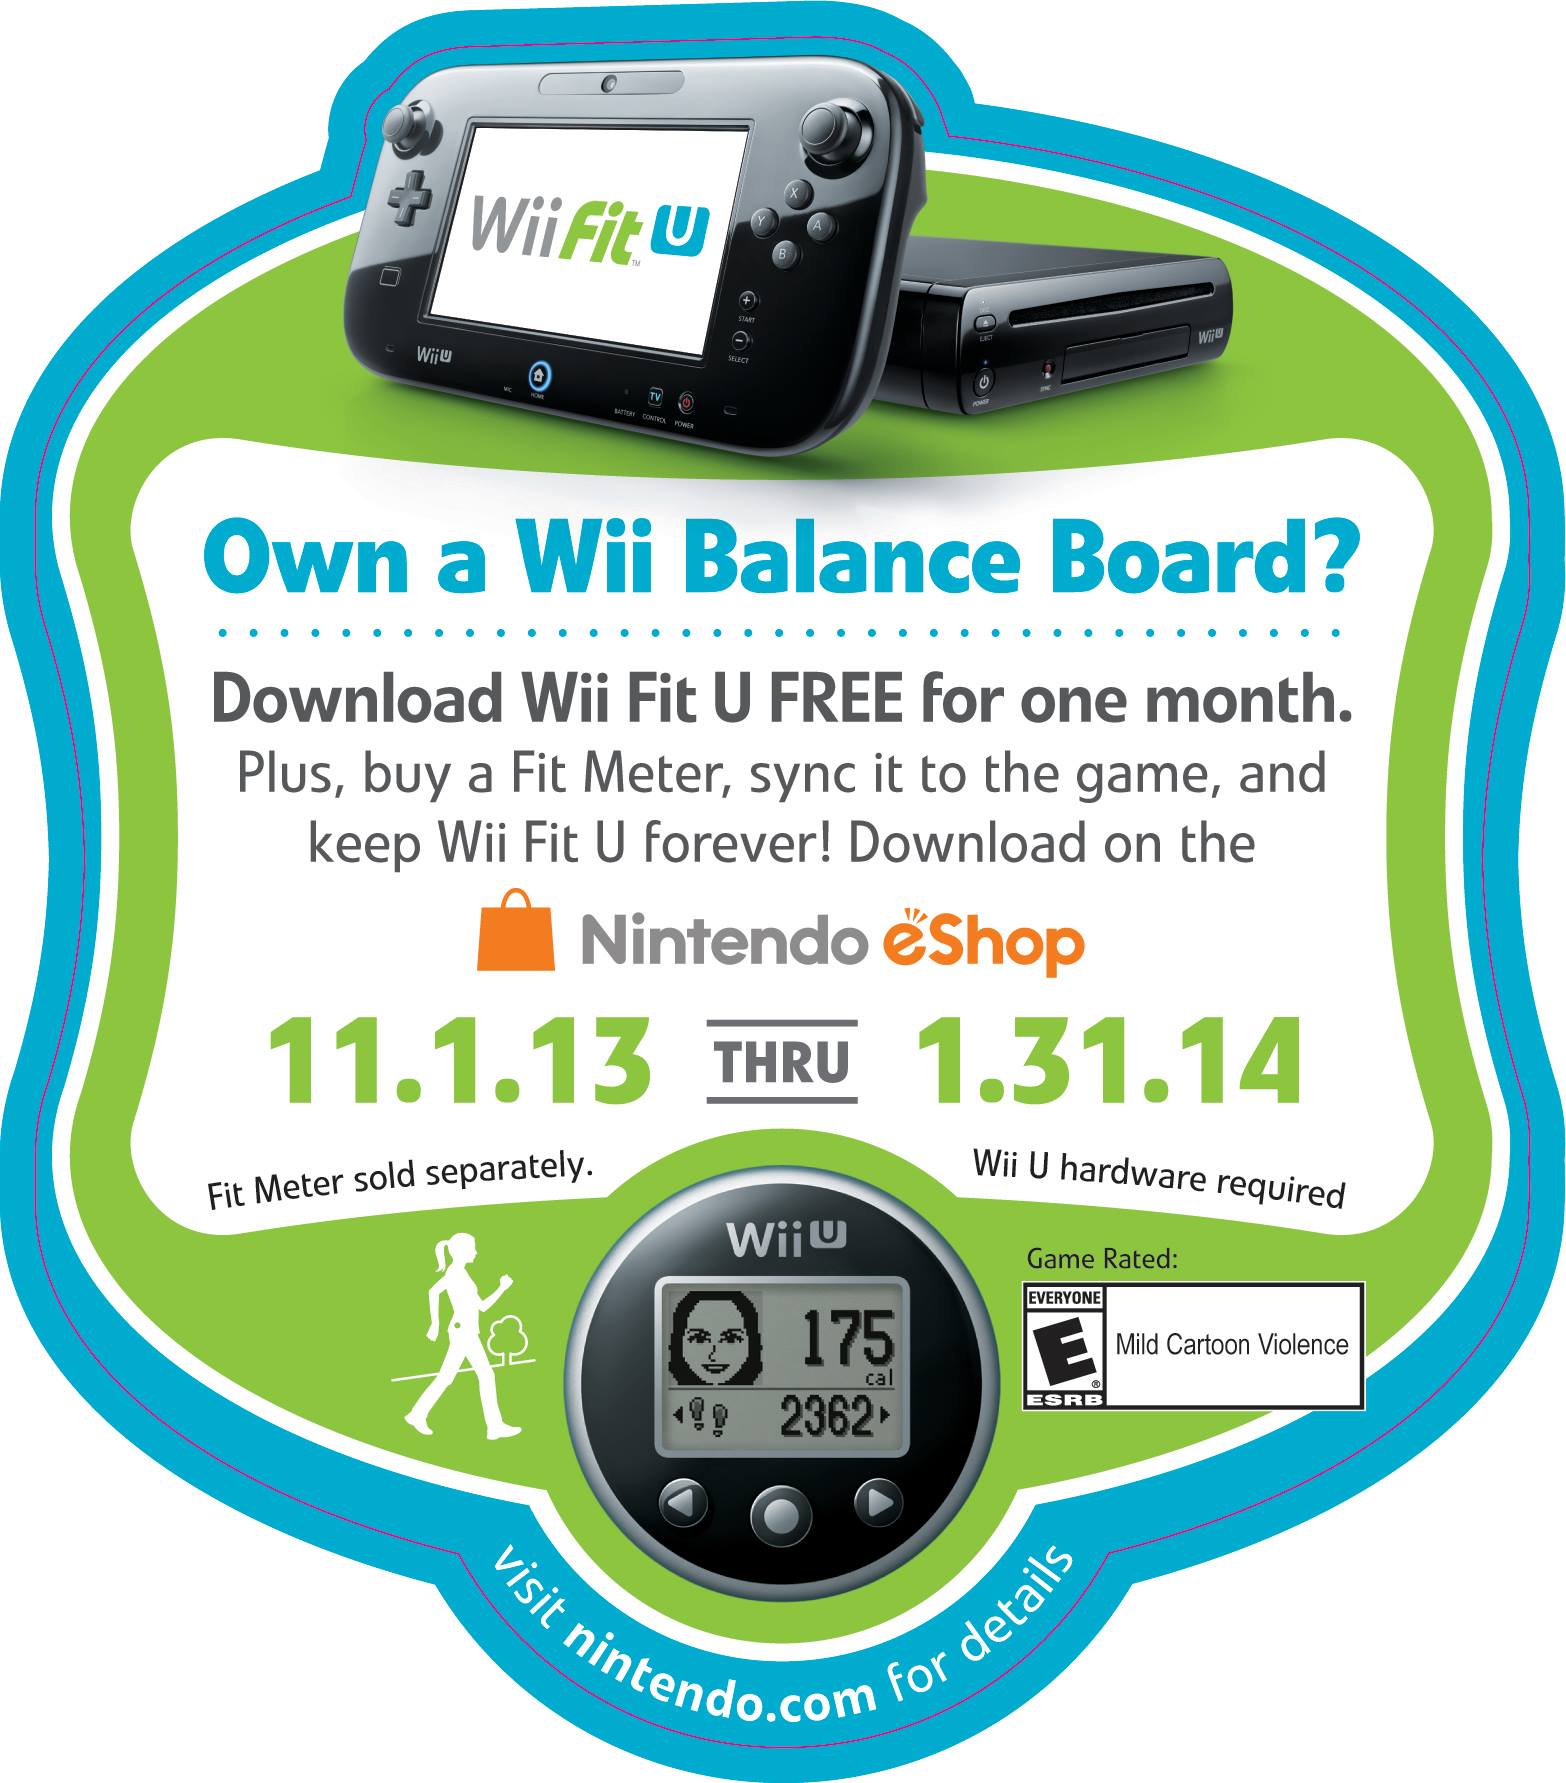 passend ongerustheid Meyella Wii Fit U Free Download Offer - GeekDad